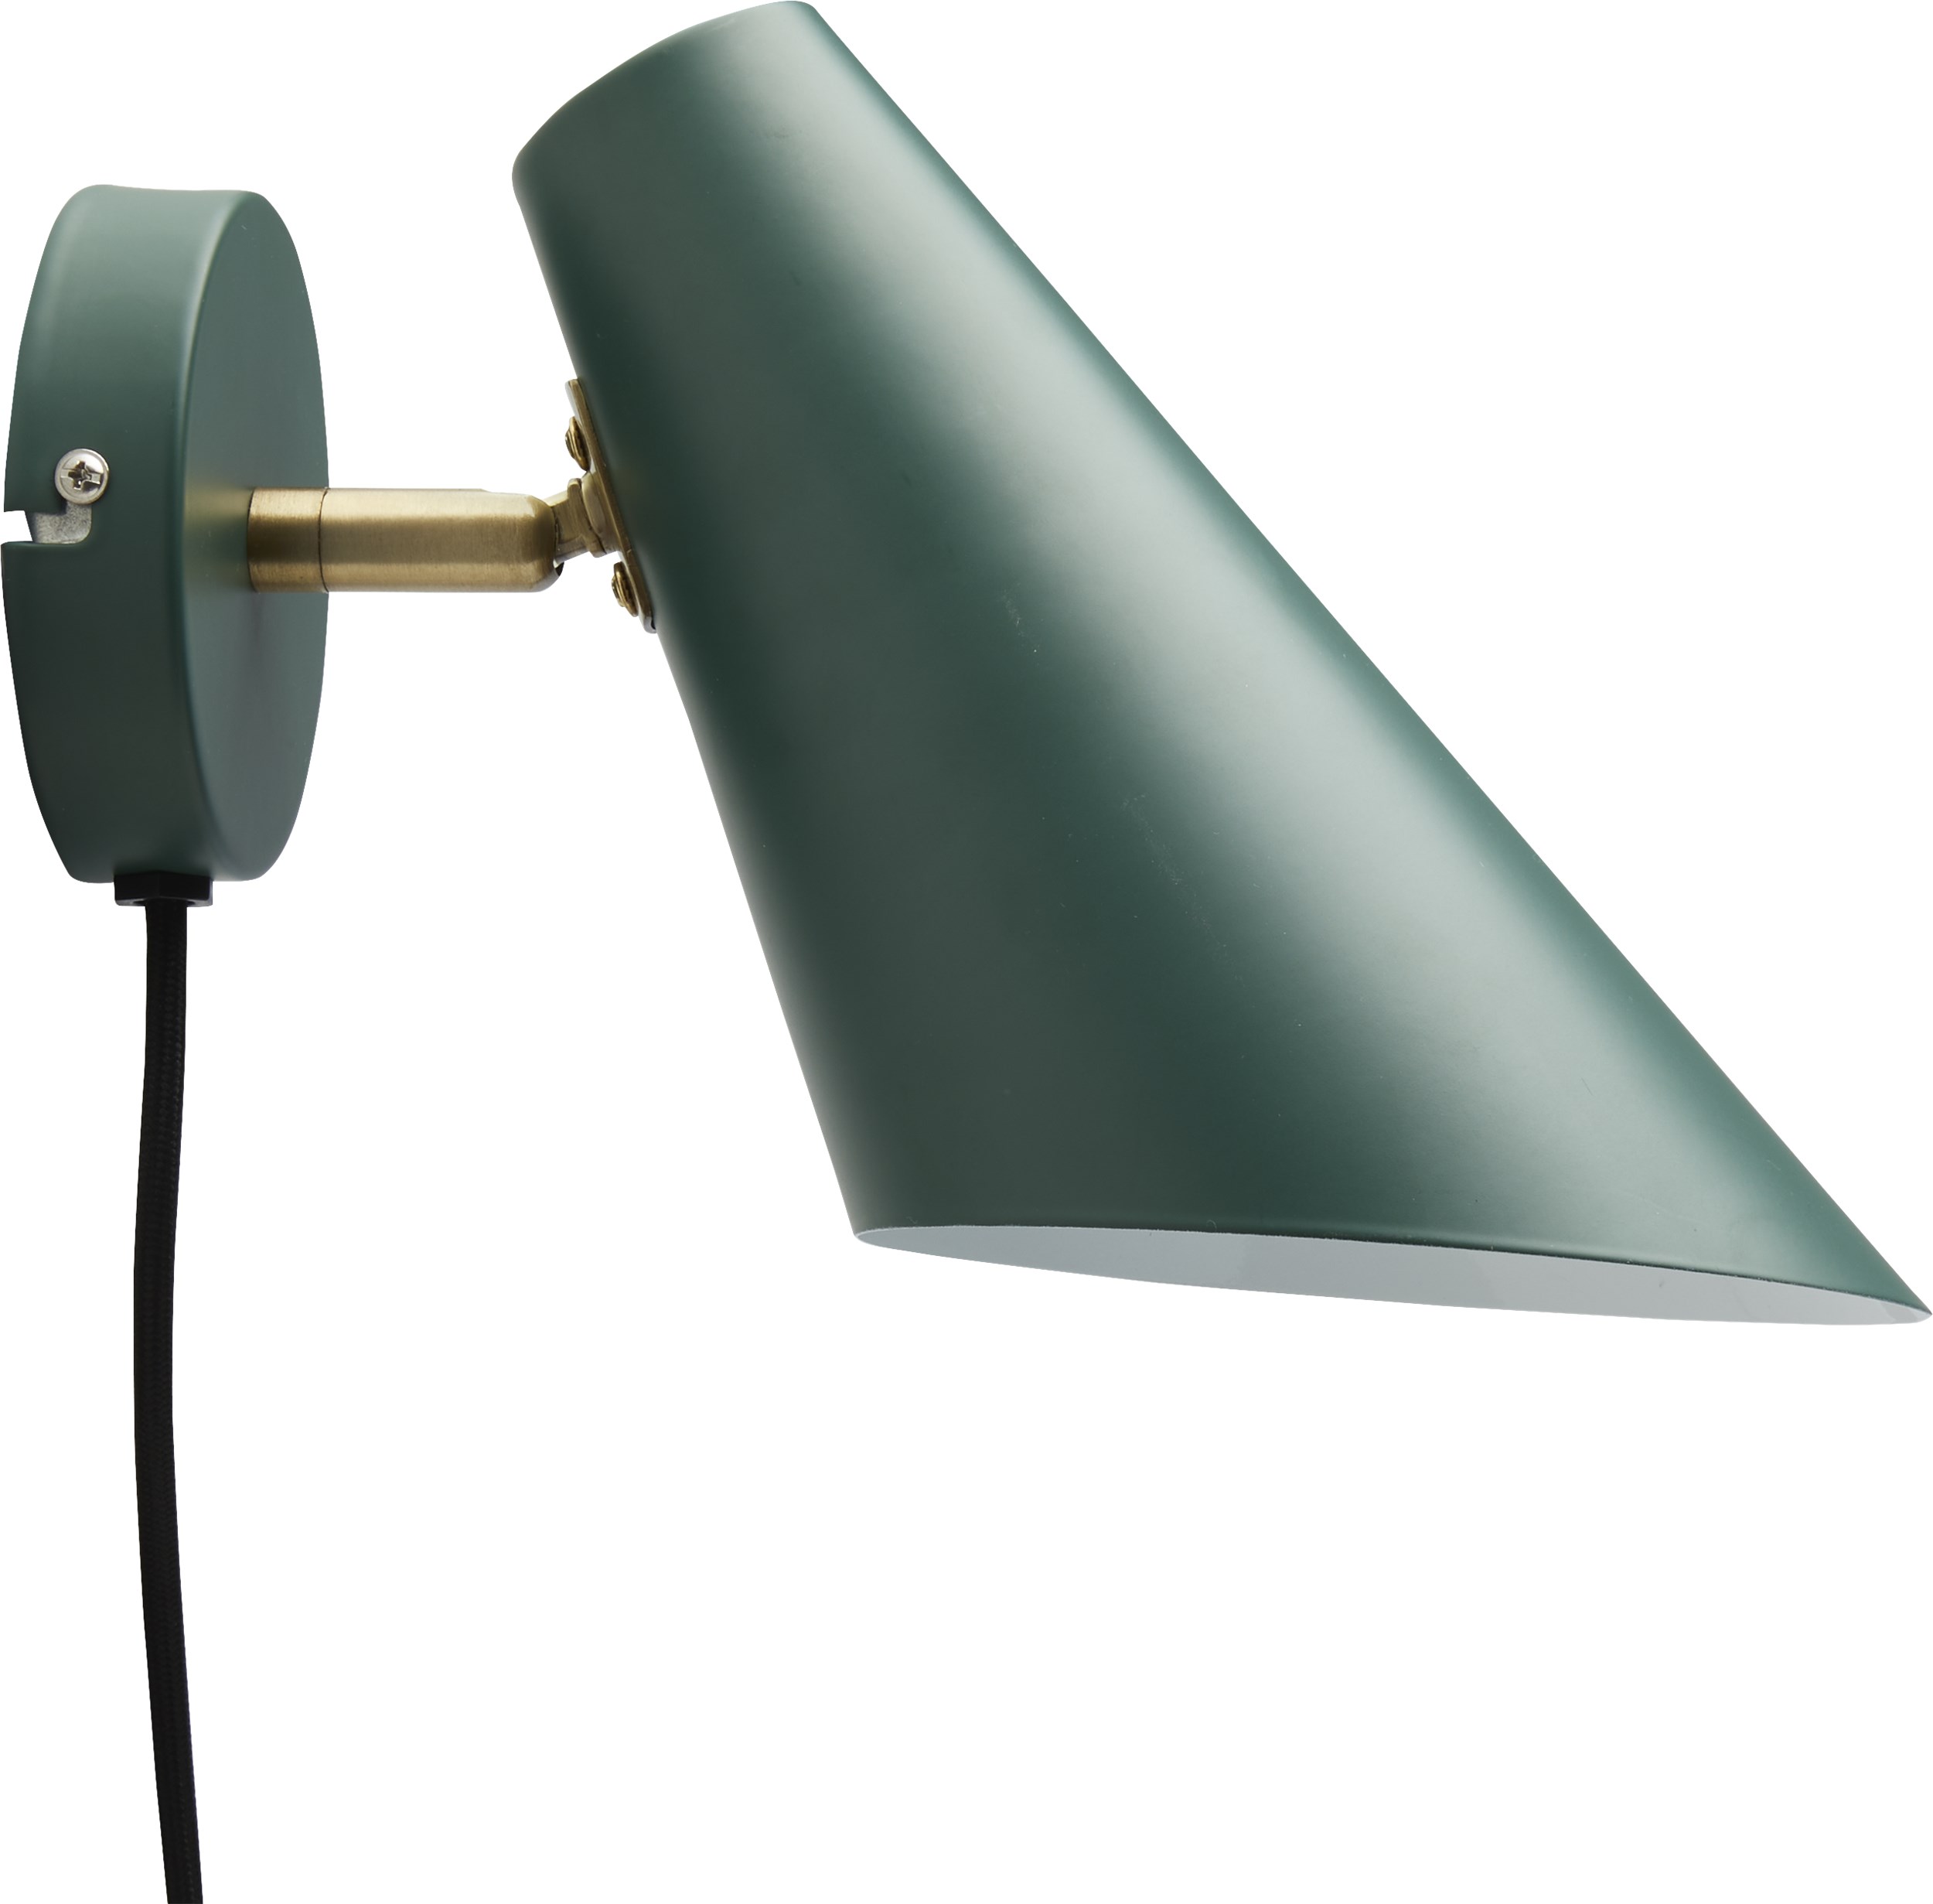 Cale Væglampe 24,5 x 24,5 cm - Grøn metalskærm/base, arm i grøn/messing og sort tekstilledning